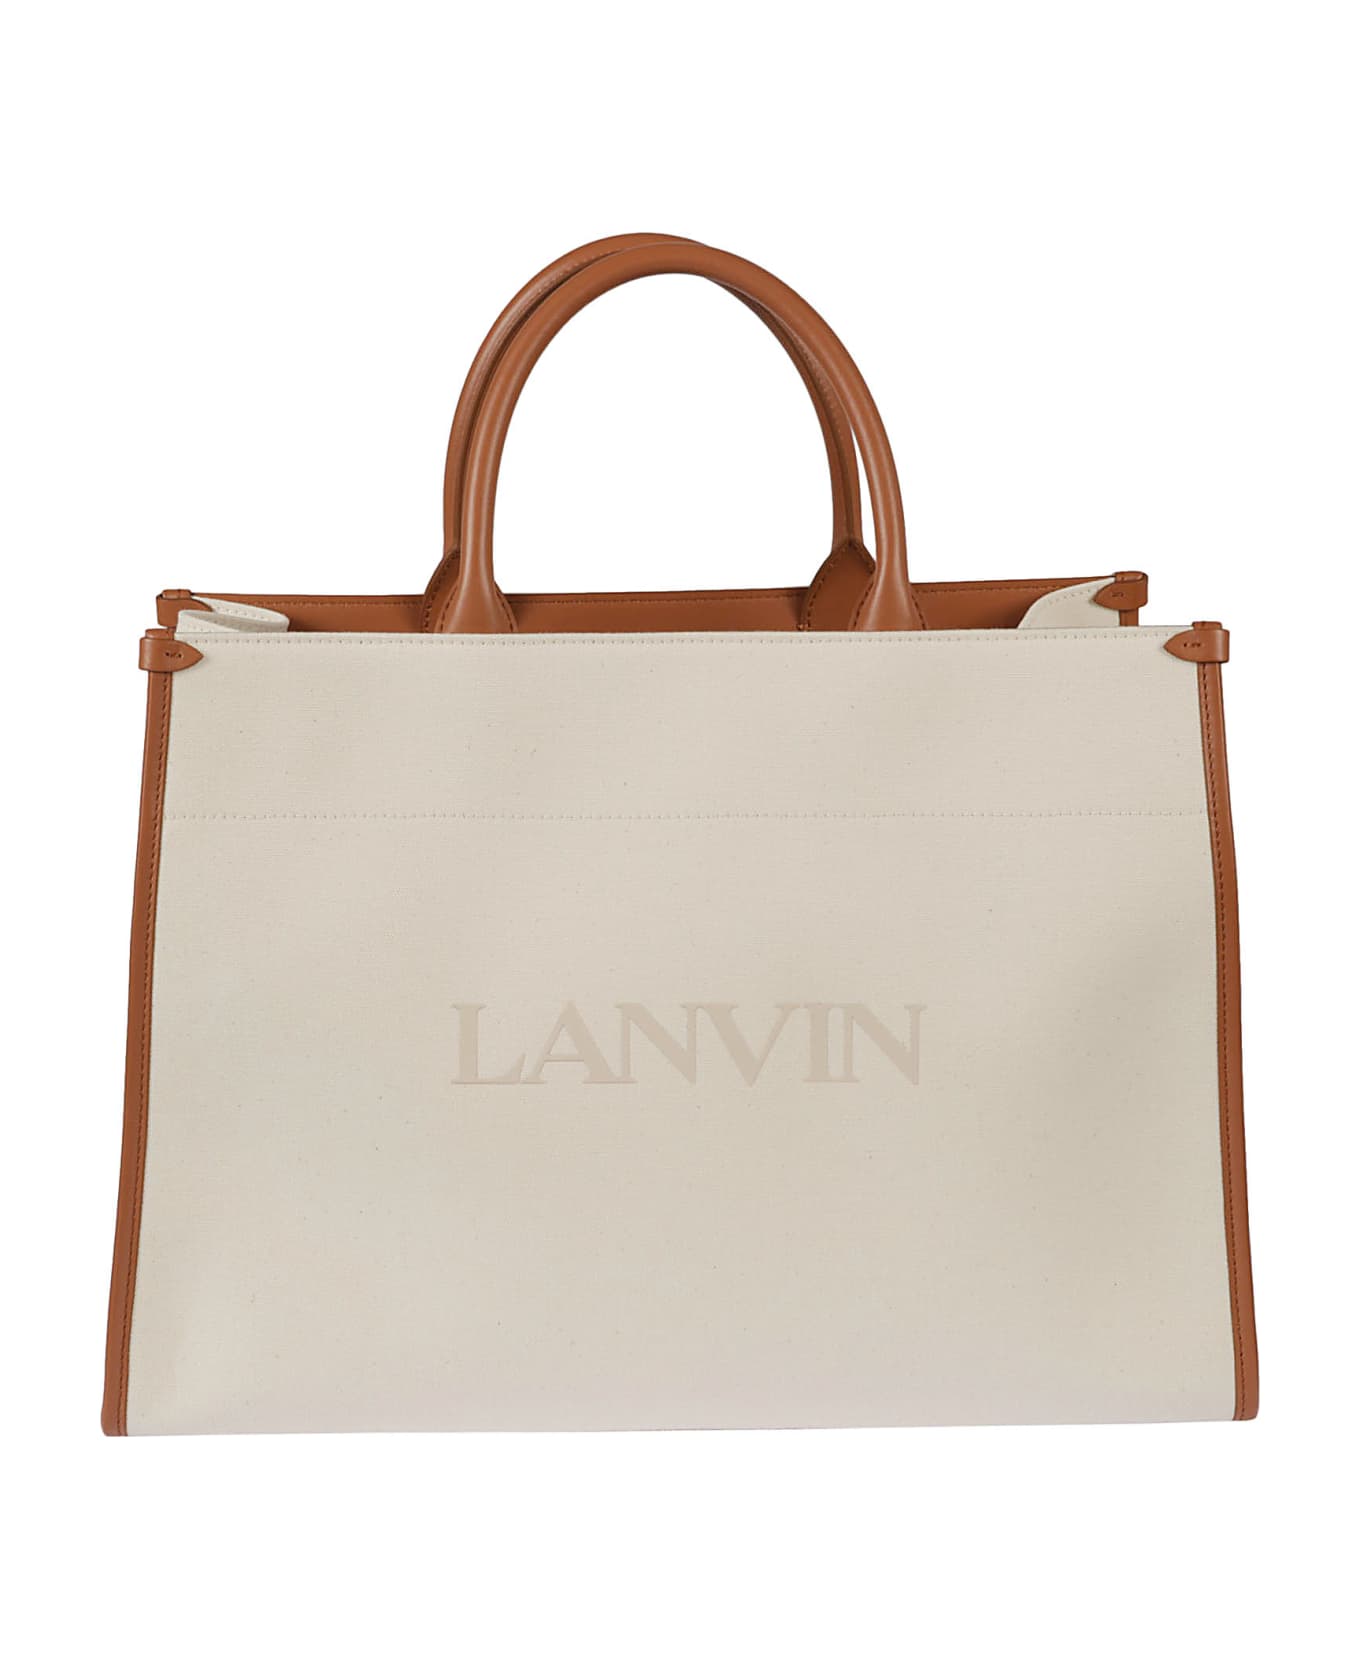 Lanvin Logo Tote - Off-White